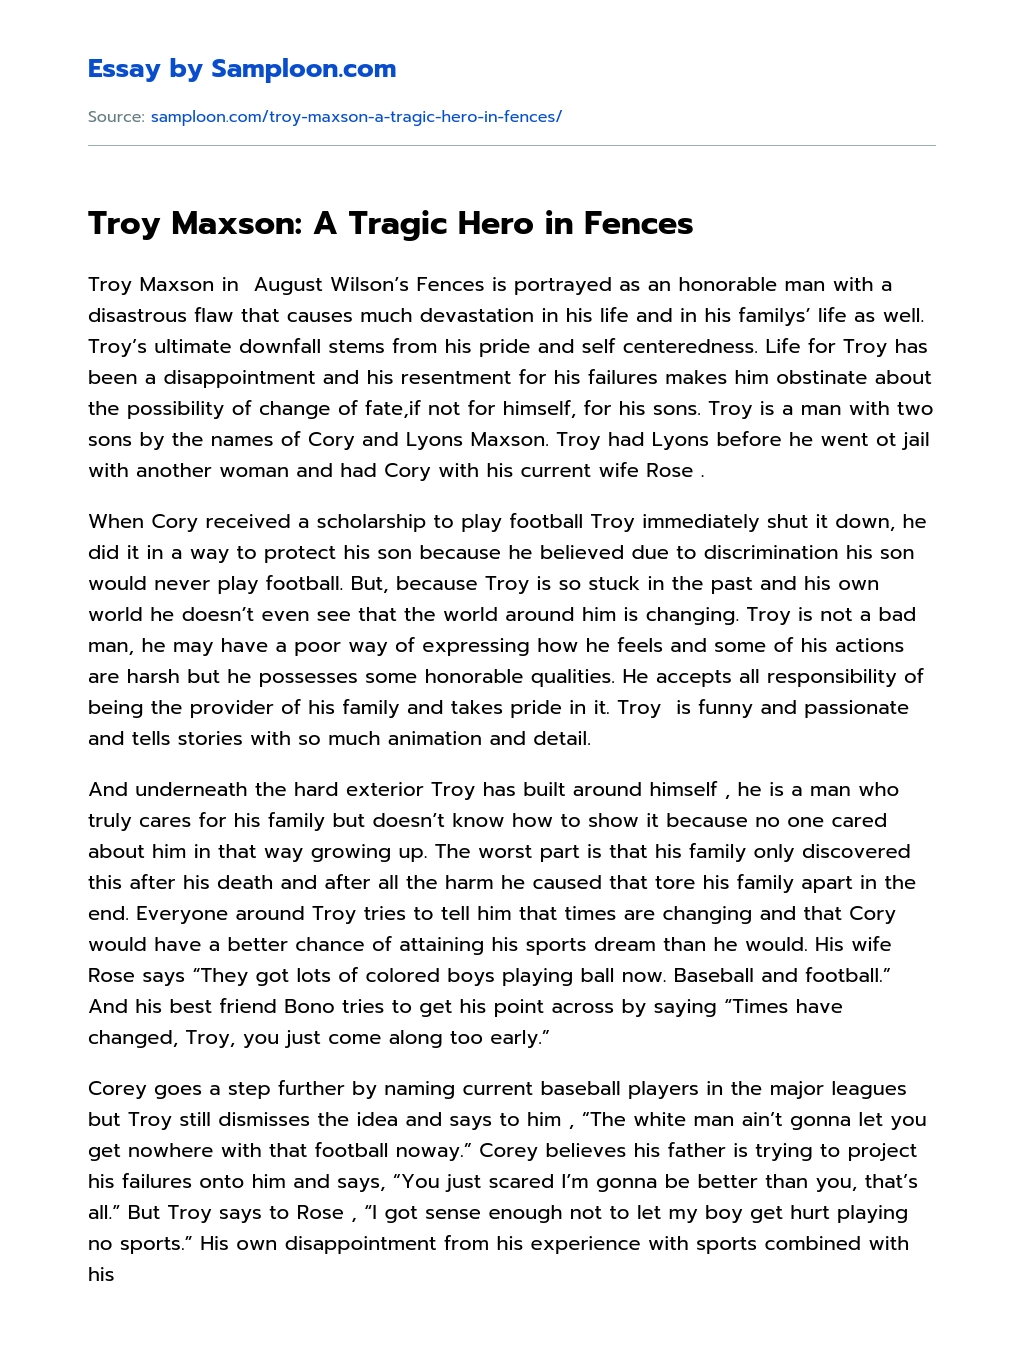 Troy Maxson: A Tragic Hero in Fences Analytical Essay essay